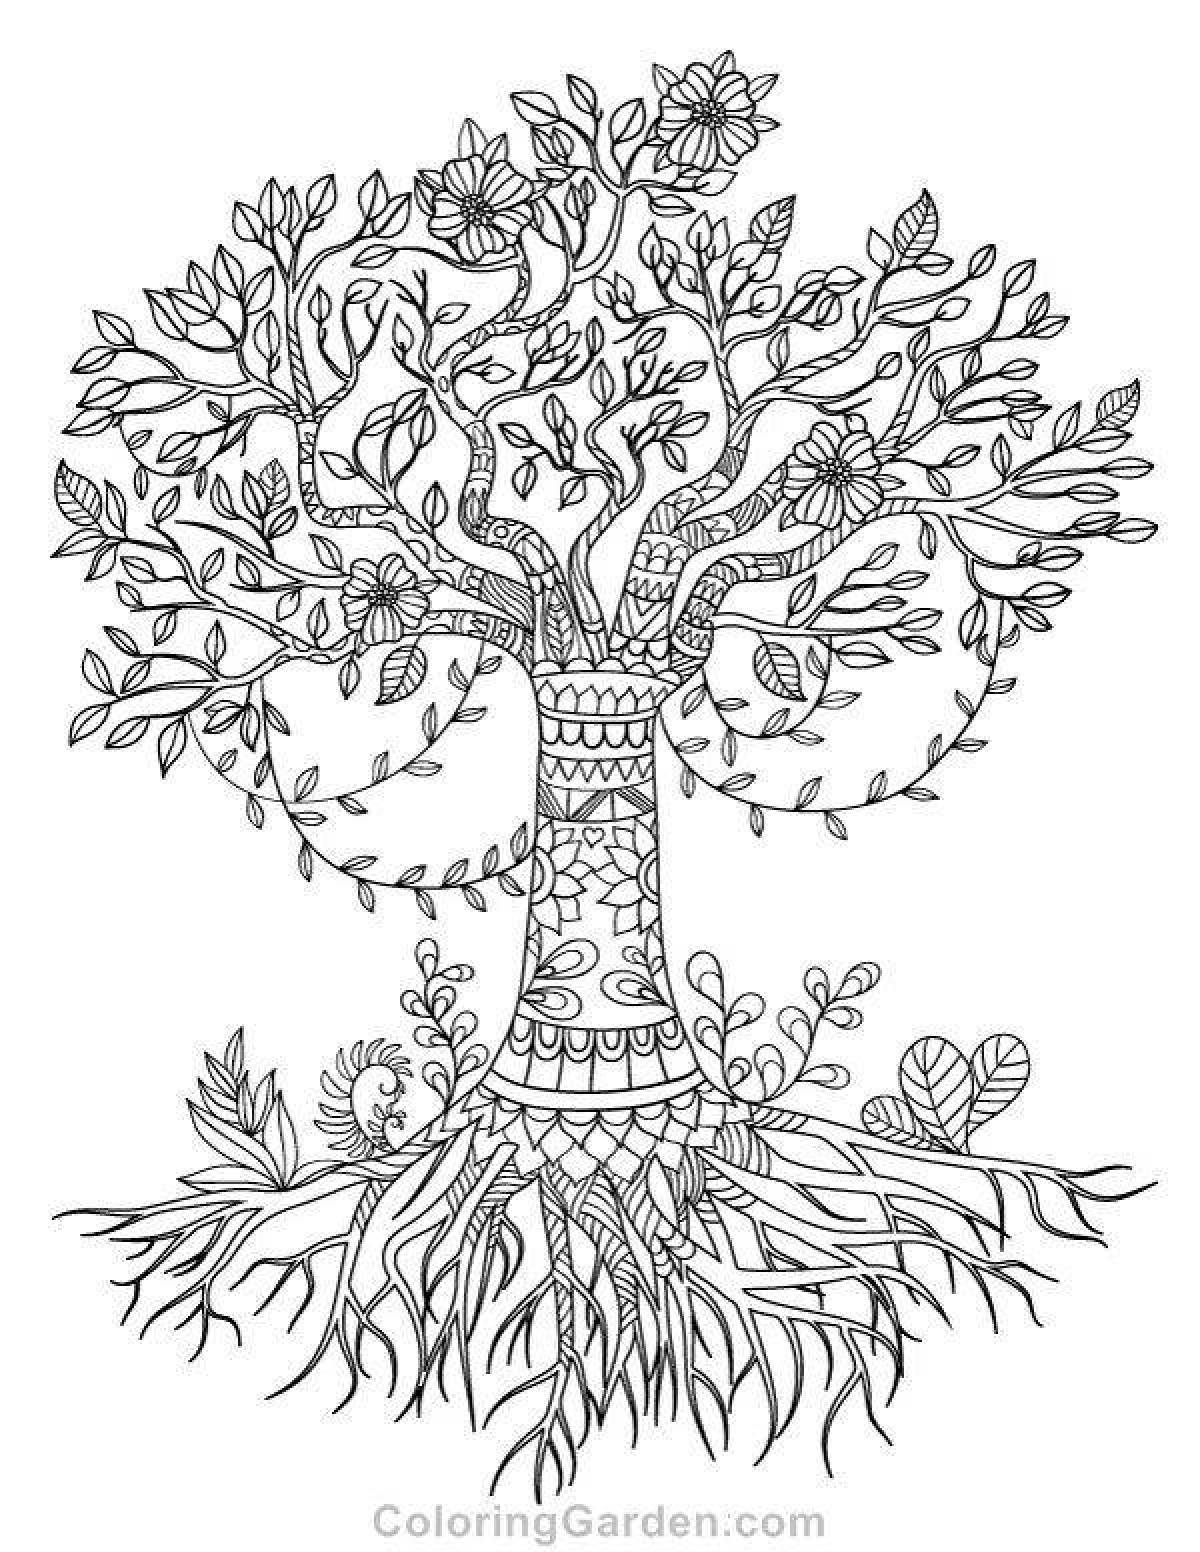 Роскошная раскраска дерево жизни